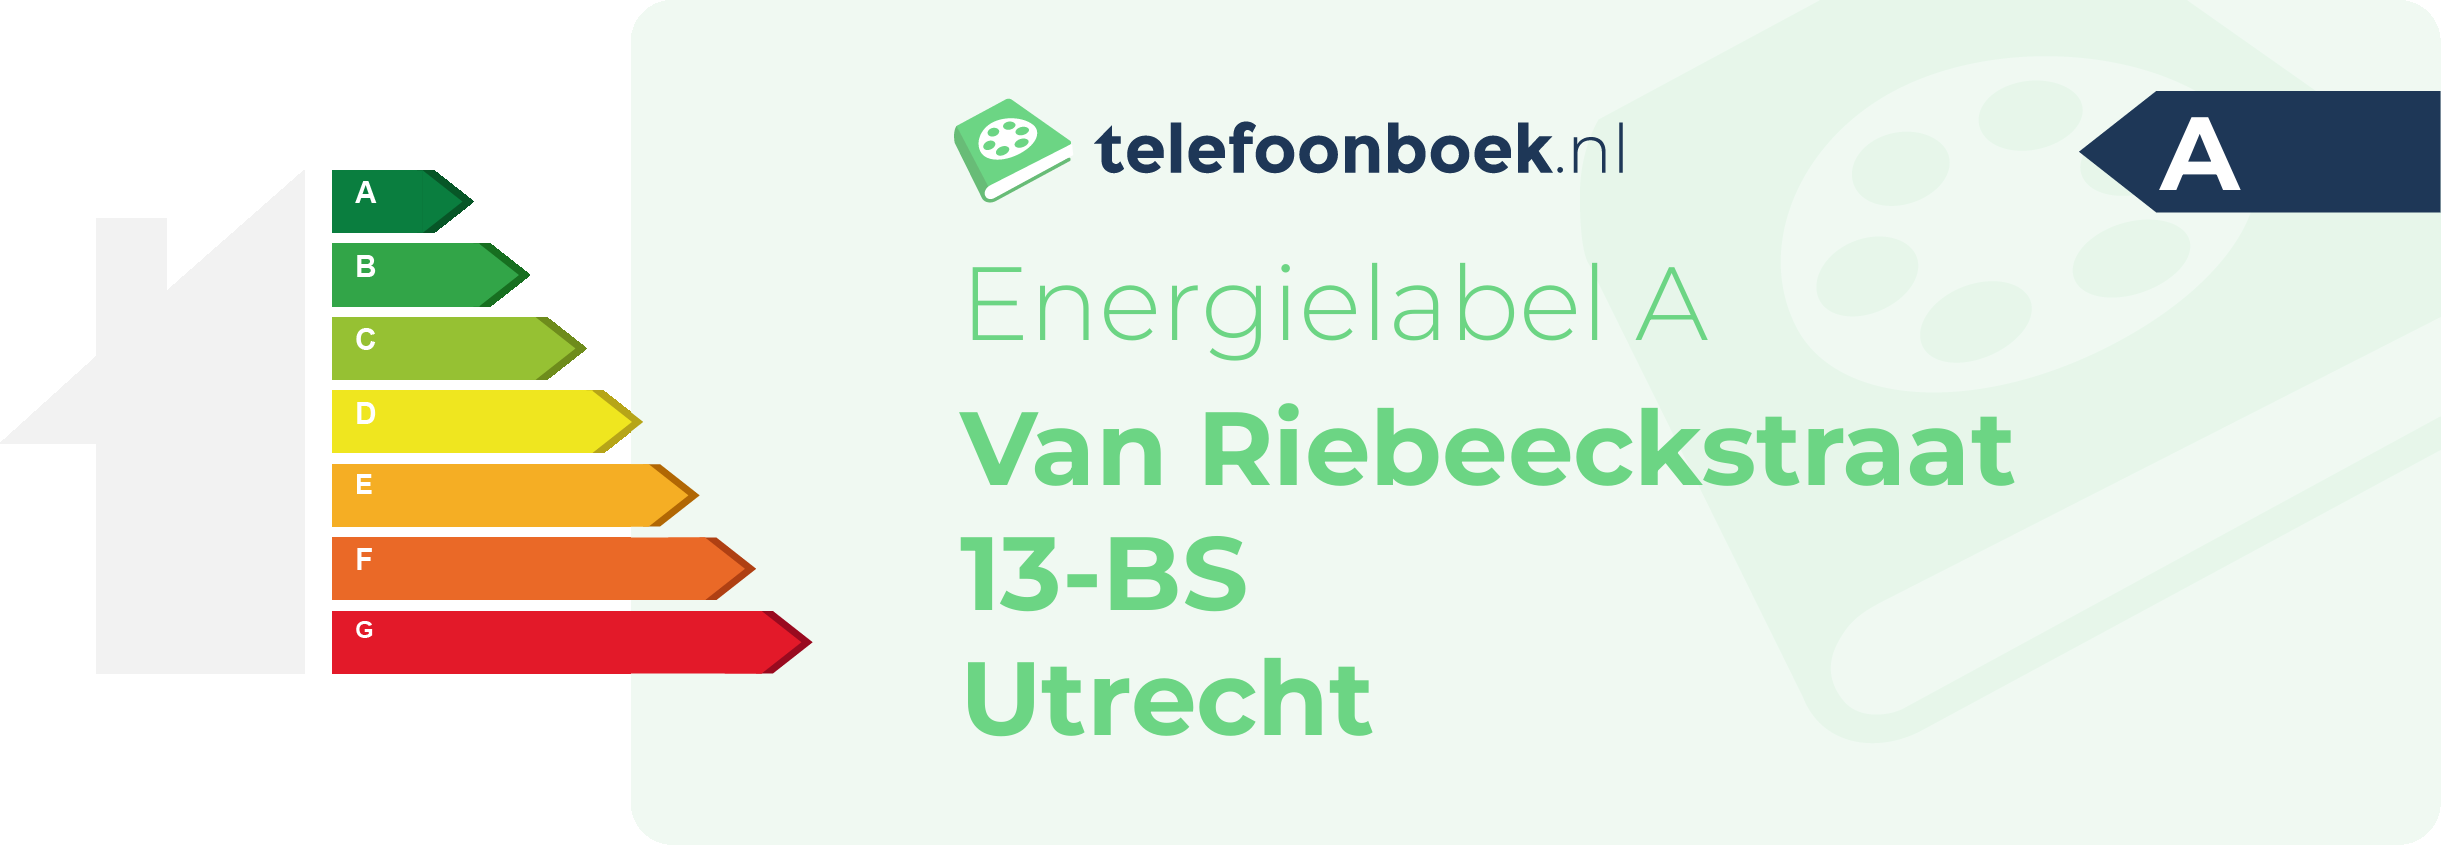 Energielabel Van Riebeeckstraat 13-BS Utrecht